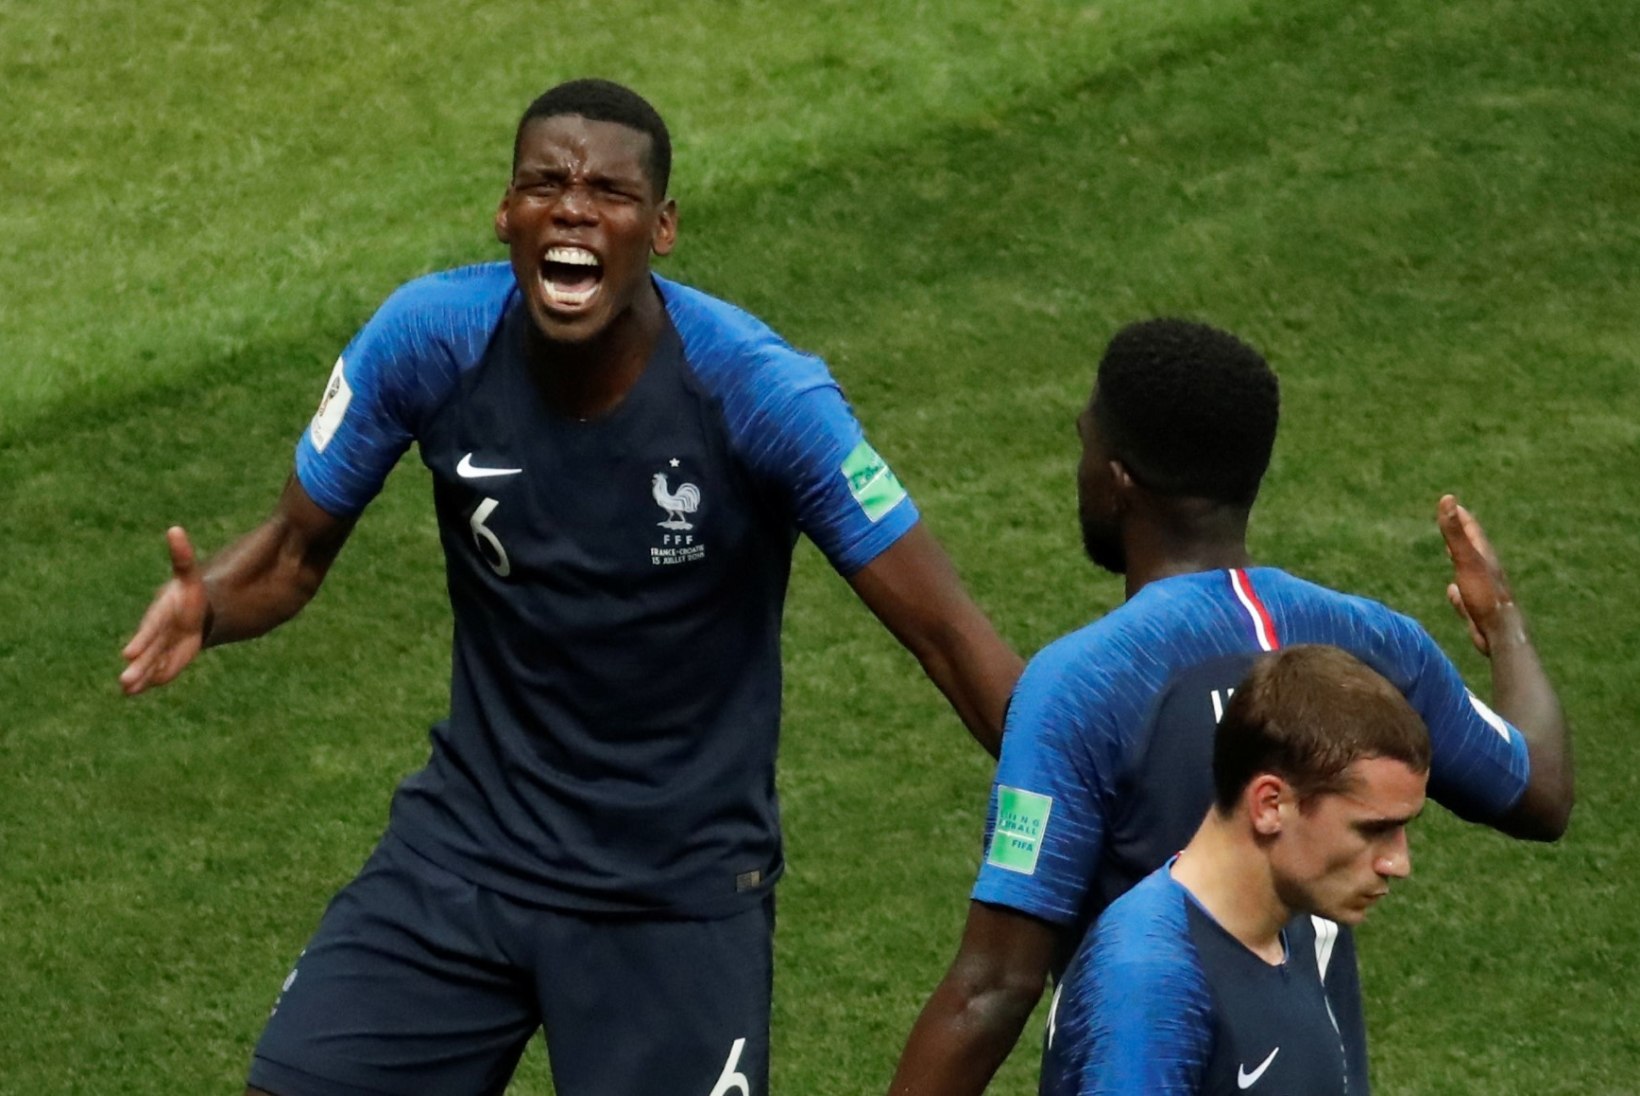 NII SEE JUHTUS | Jalgpalli MM: Prantsusmaa tõusis kahekordseks maailmameistriks